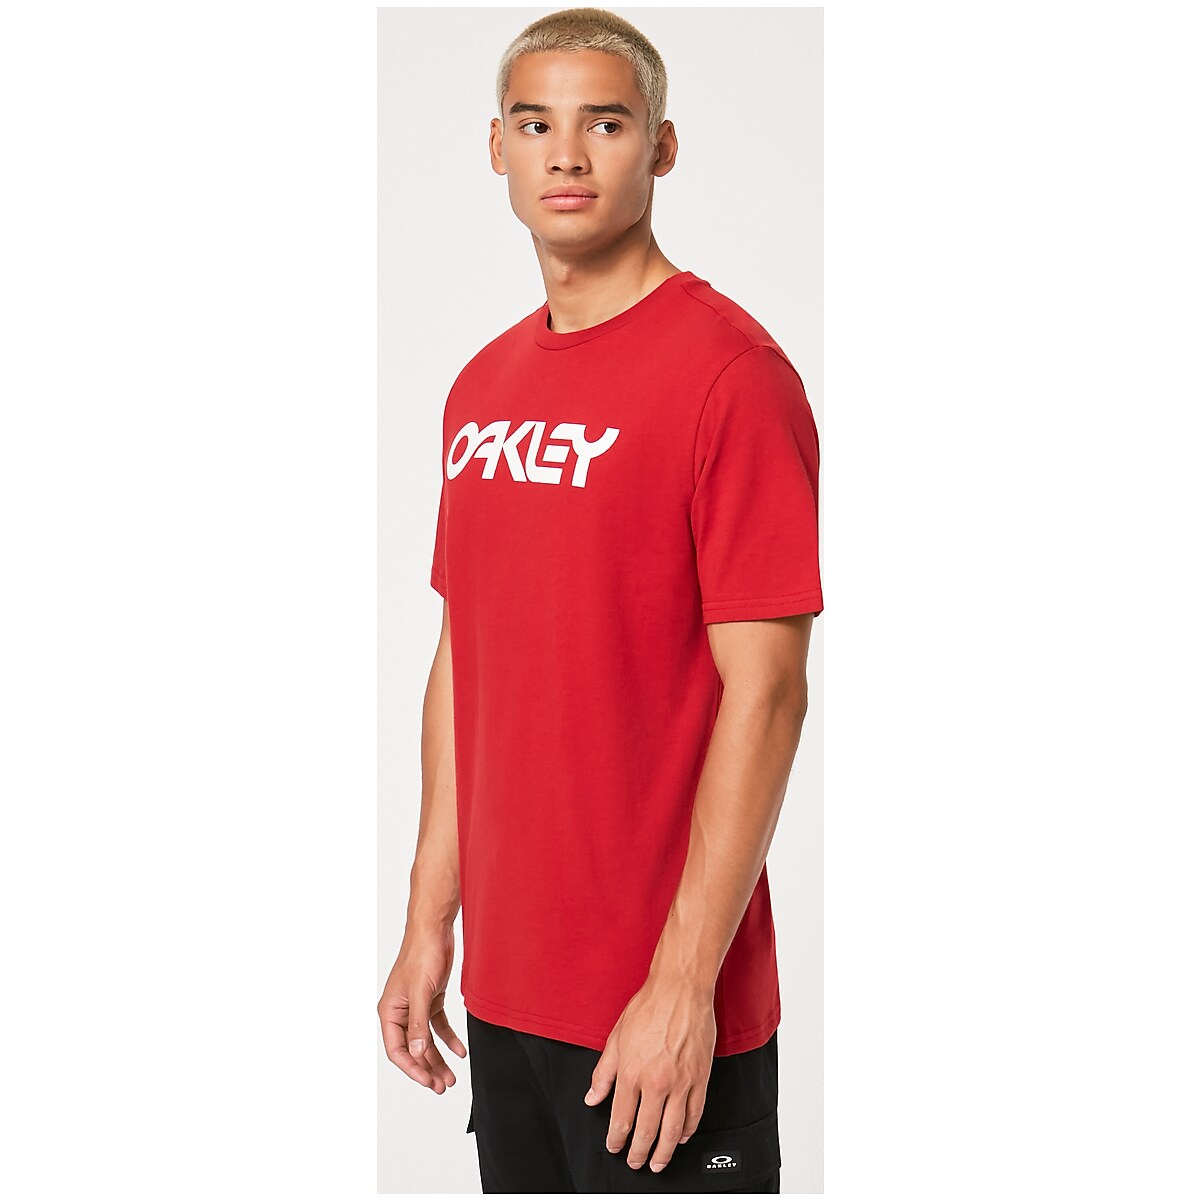 Camiseta Oakley Flag Vermelha - Compre Agora